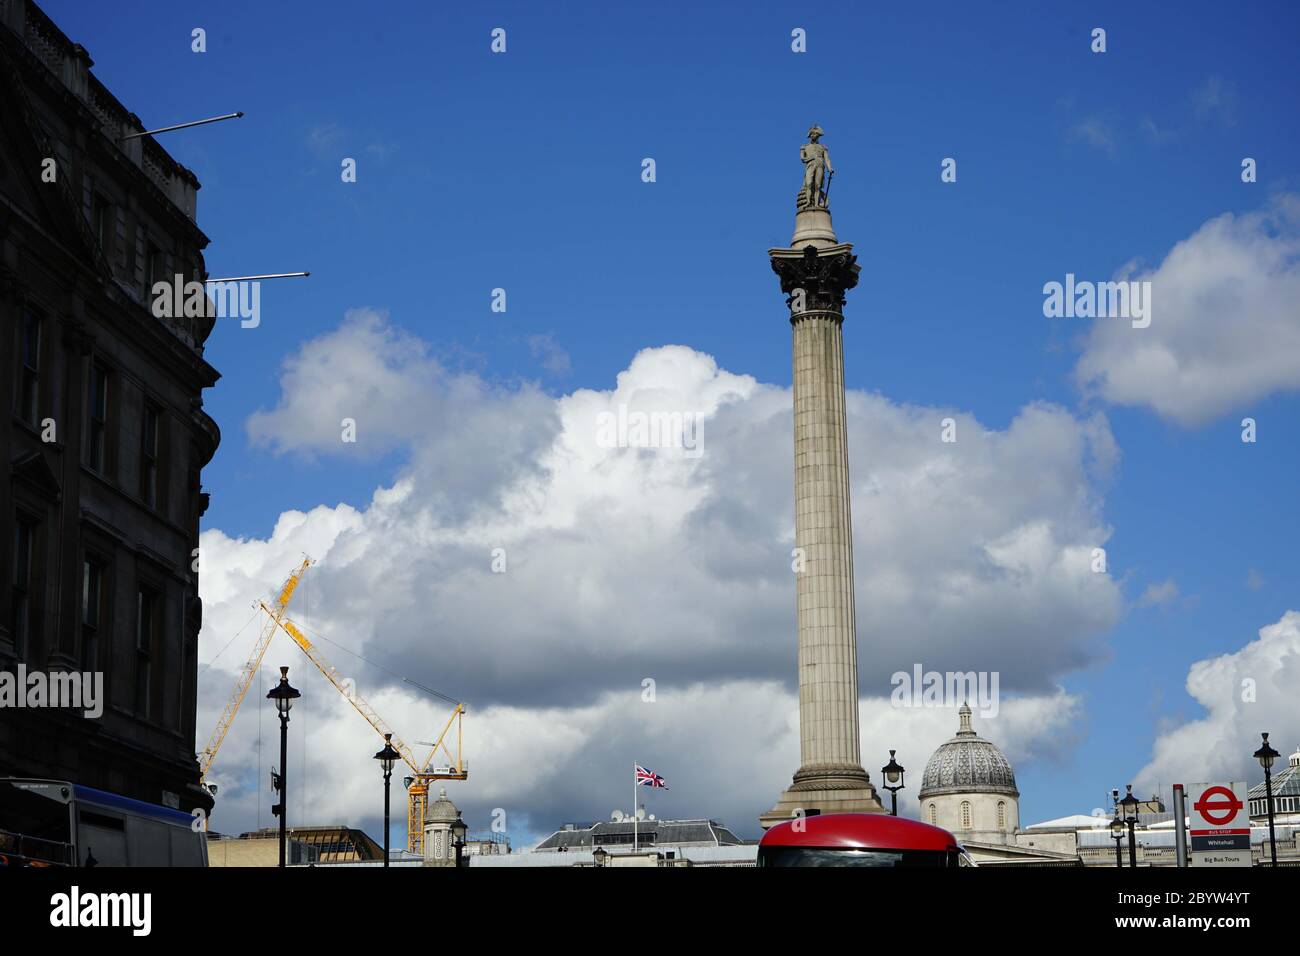 Un monumento progettato dall architetto William Railton nel 1838. Il Nelson's colonna in Trafalgar Square, London Inghilterra England Foto Stock